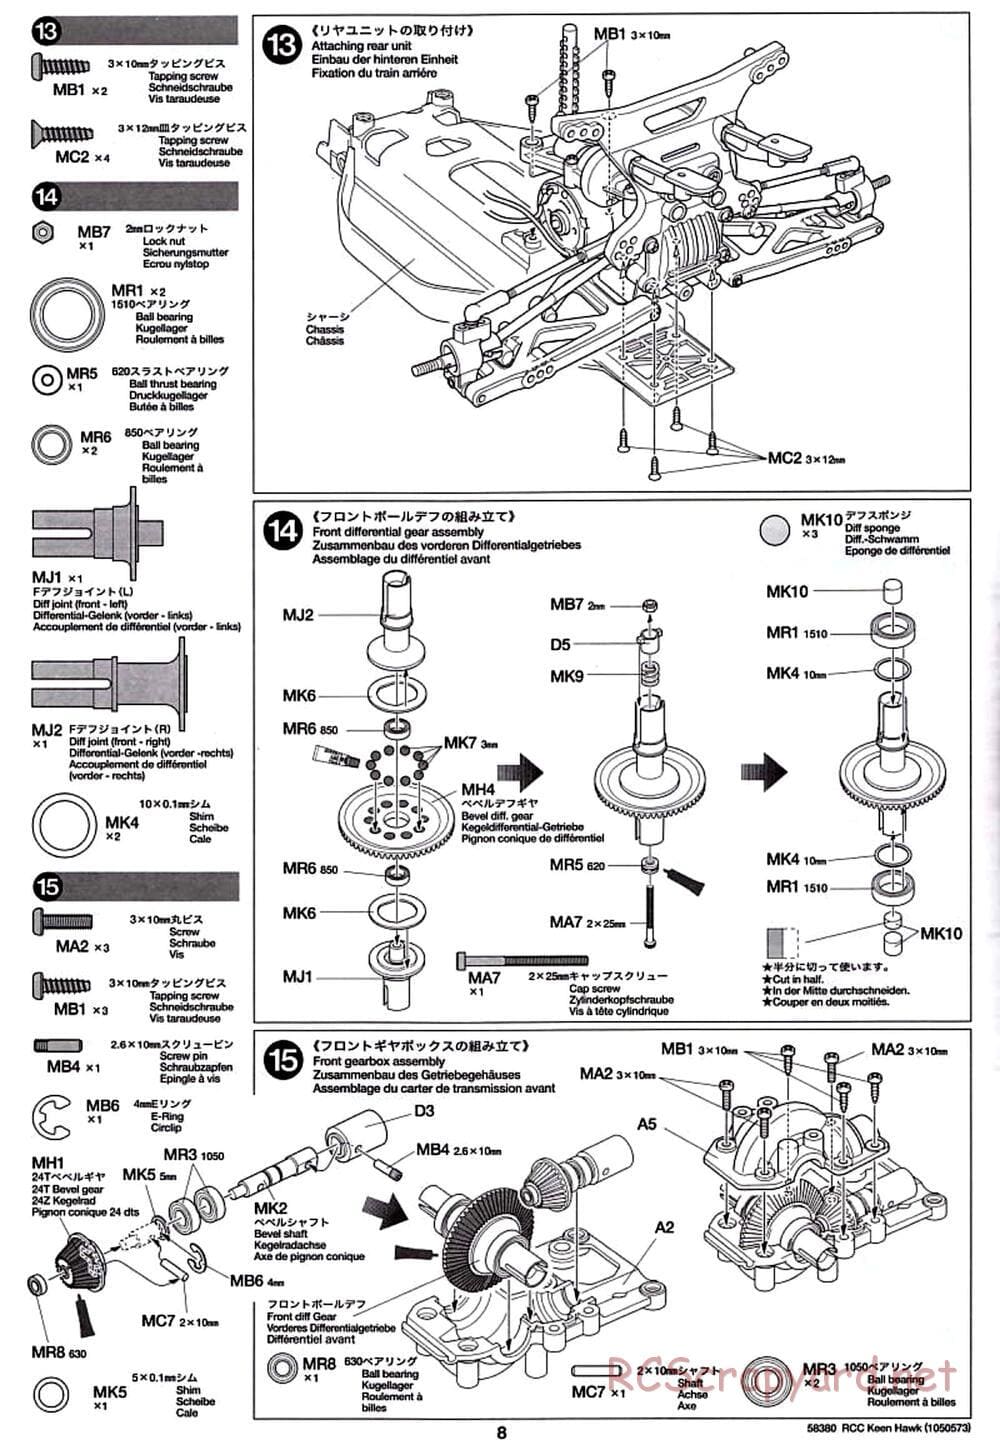 Tamiya - Keen Hawk Chassis - Manual - Page 8